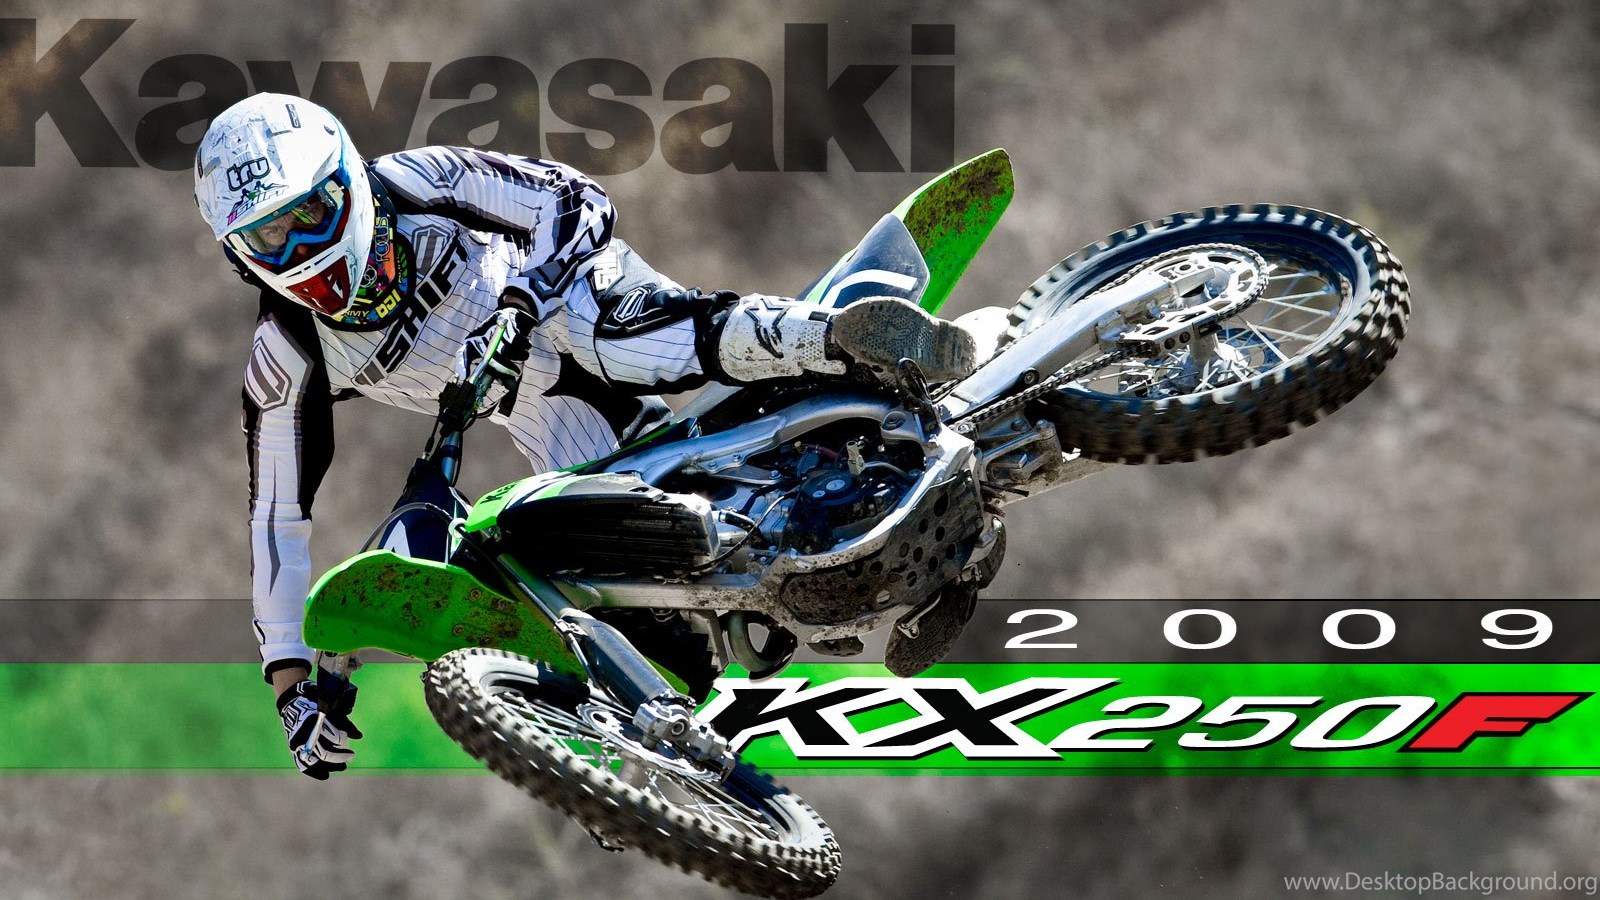 The Gallery For > Kawasaki Dirt Bike Monster Energy Wallpaper Desktop Background